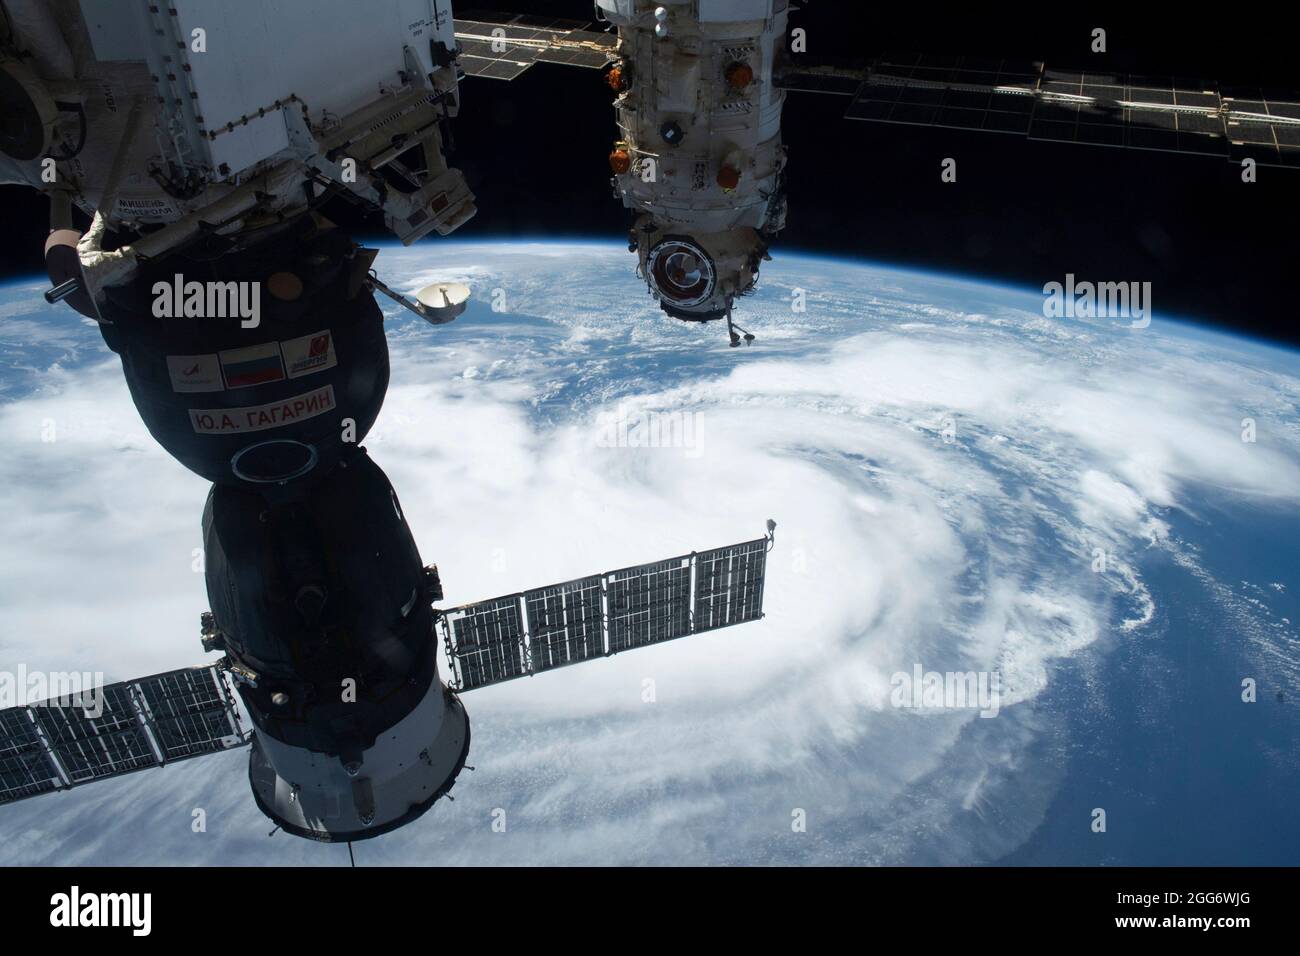 Visualizza l'uragano Ida, una tempesta di categoria 4 che si avvicina alla costa della bassa Louisiana presa dalla Stazione spaziale Internazionale 28 agosto 2021 a Earth Orbit. IDA sta impacchettando venti di 150 mph fatto la caduta 16 anni fa al giorno dell'uragano Katrina. Credit: Planetpix/Alamy Live News Foto Stock